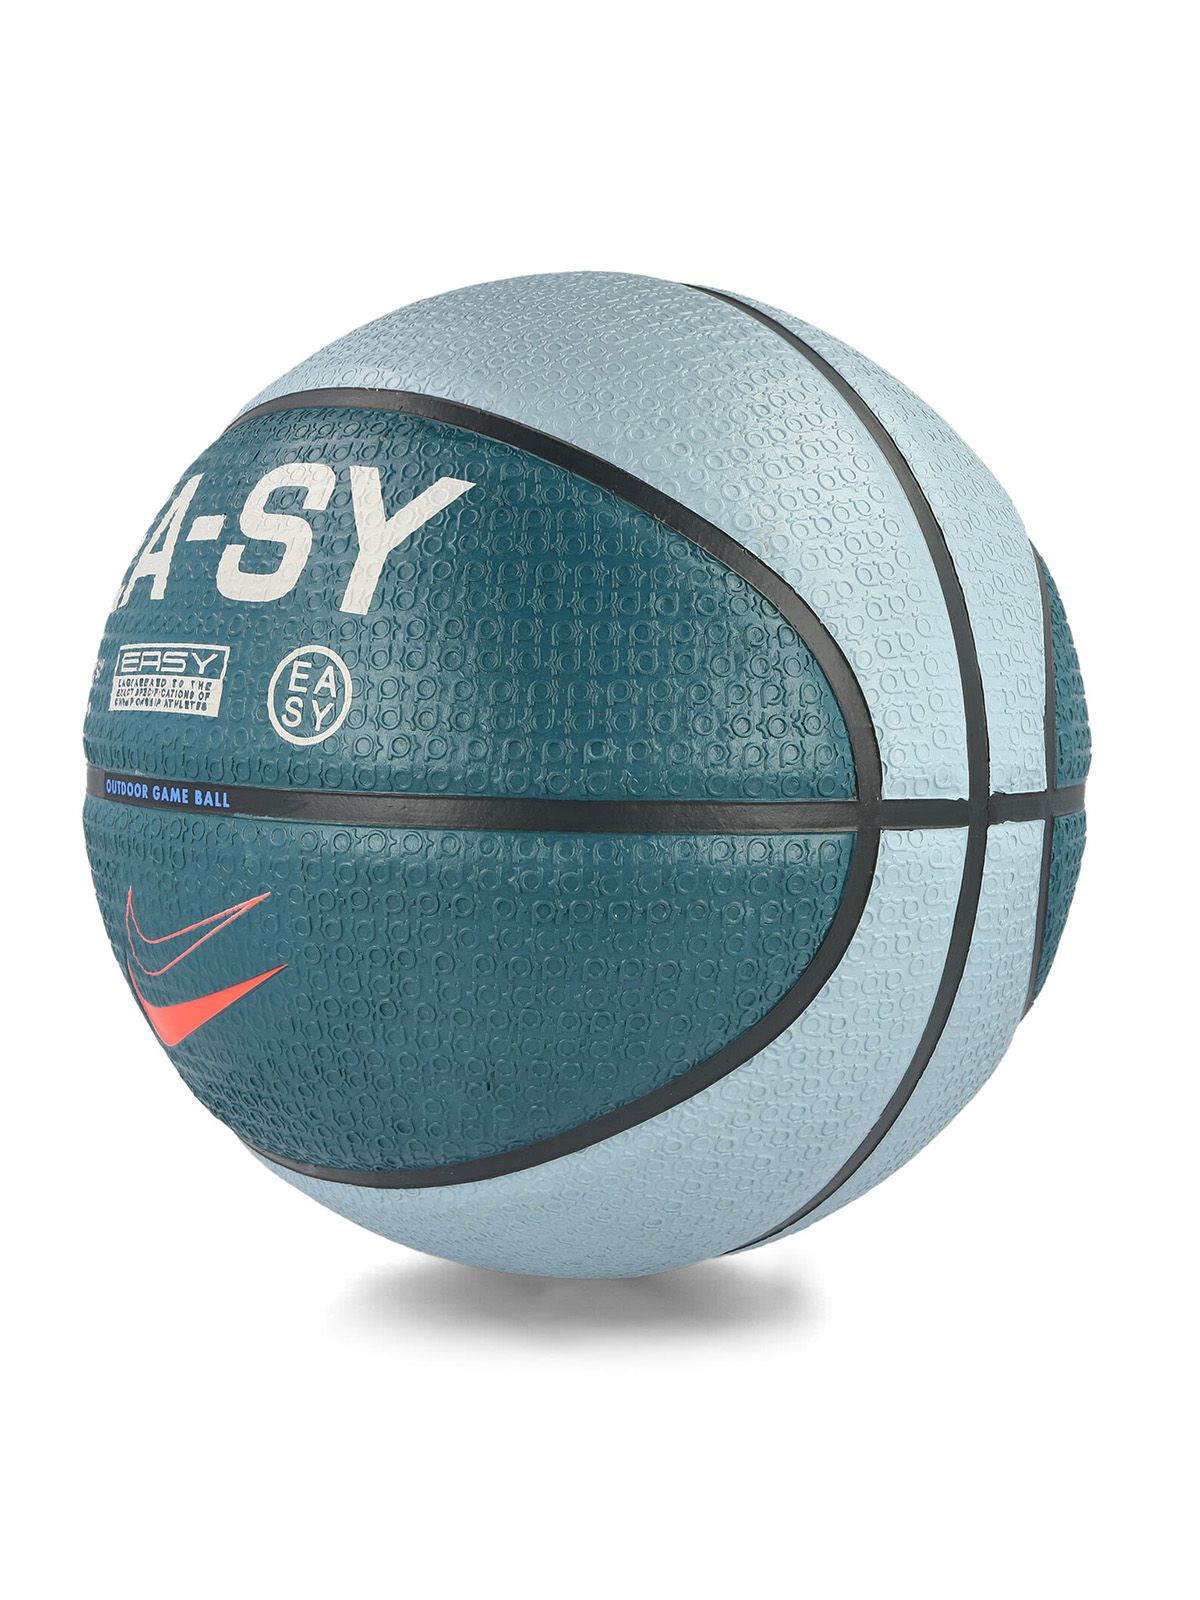 Palle da Basket Unisex Nike - Kd Playground 07 - Blu